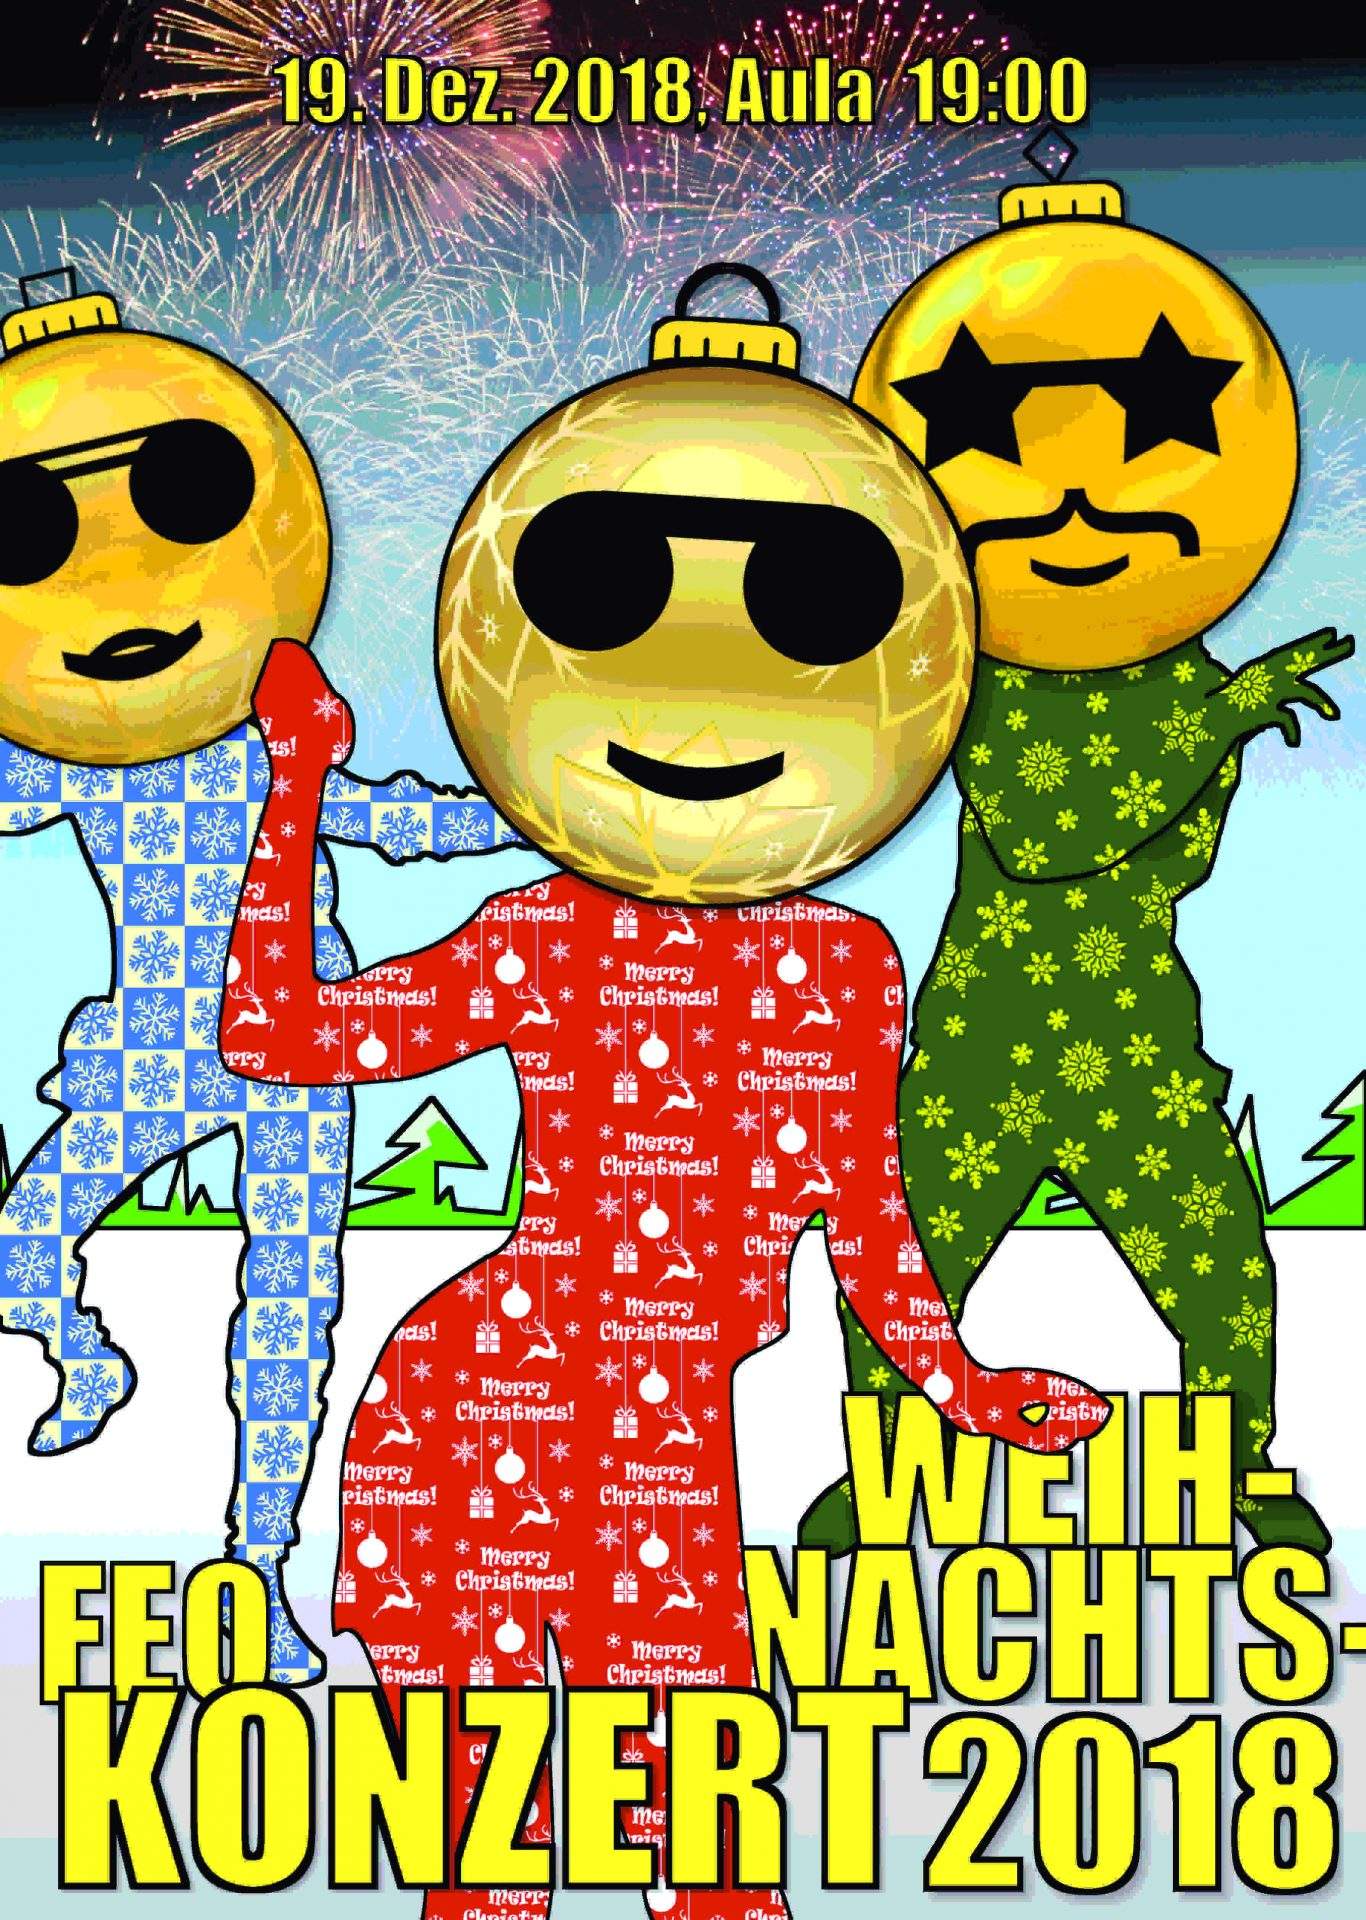 Auf dem Plakat zum FEO-Weihnachtskonzert 2018 tanzen drei weihnachtlich gekleidete Figuren, die Weihnachtskugeln mit Smiley-Gesicht als Kopf haben.